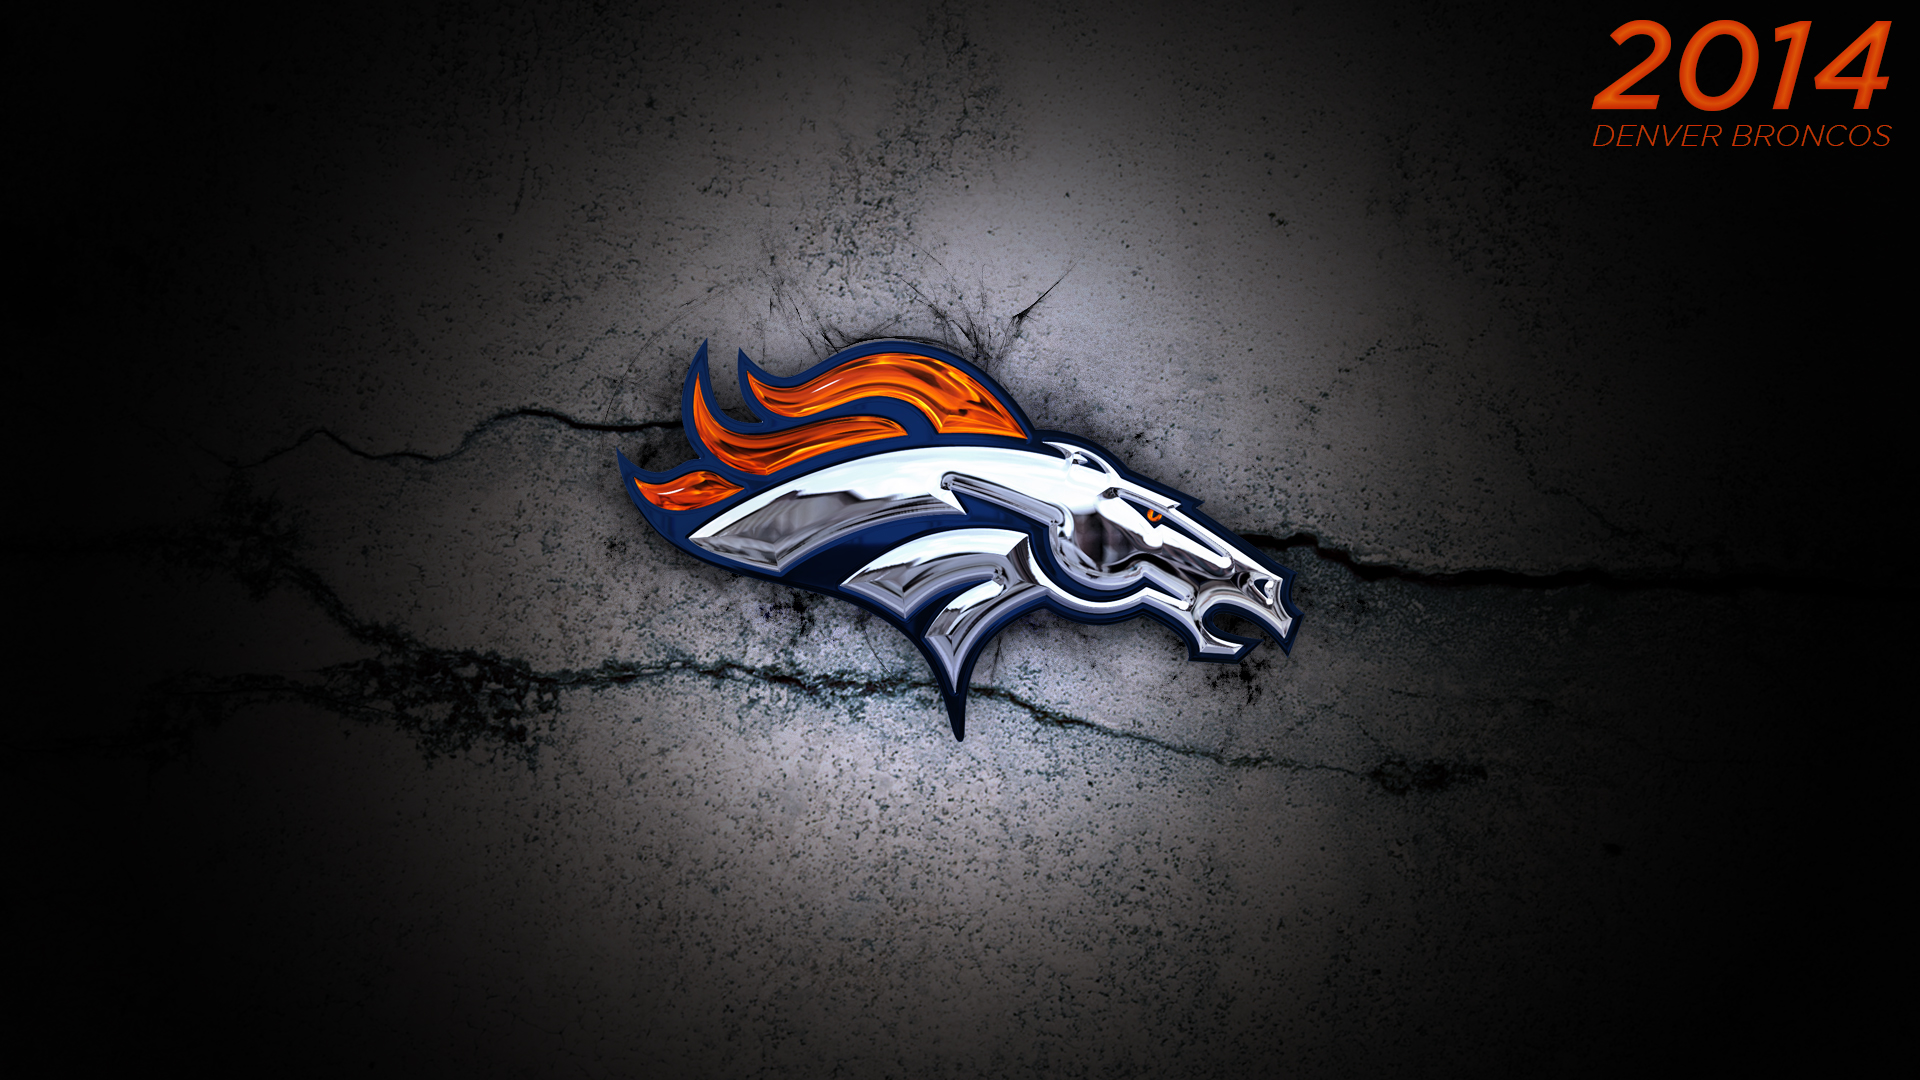 Denver Bronco Super Bowl Wallpaper Background On